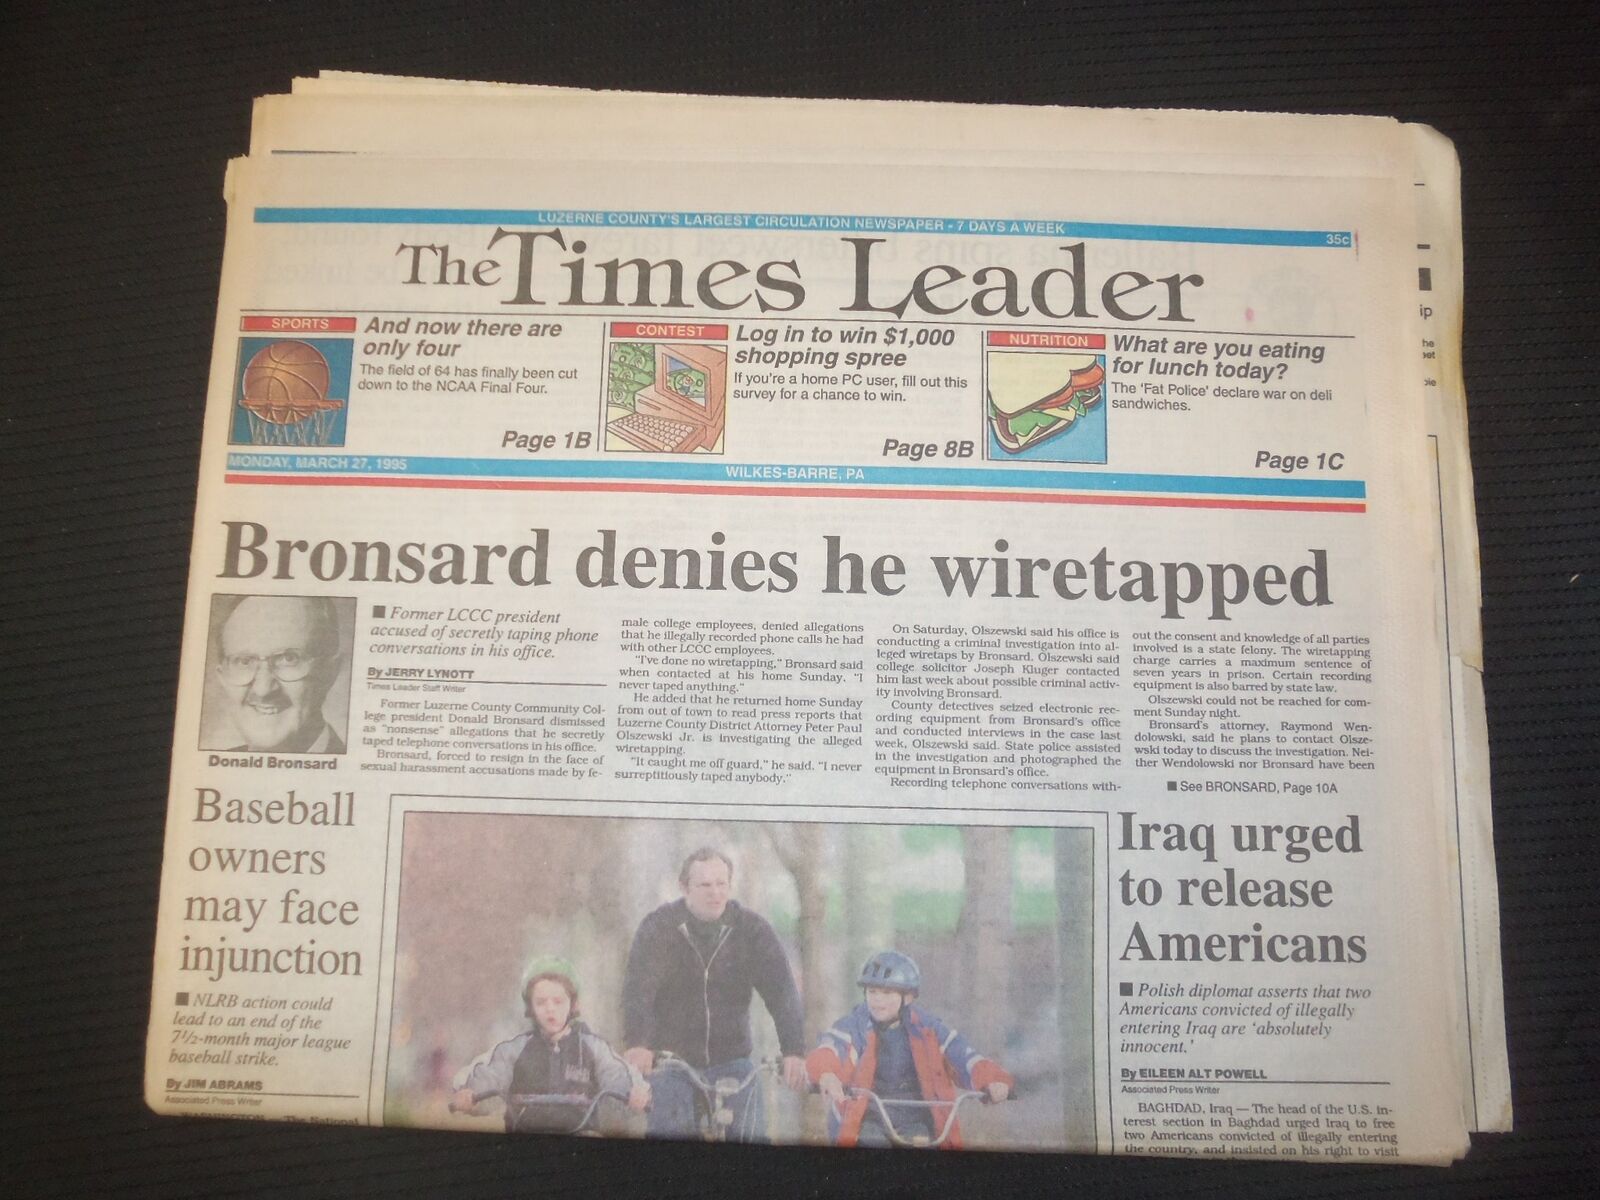 1995 MAR 27 WILKES-BARRE TIMES LEADER - BRONSARD DENIES HE WIRETAPPED - NP 7581